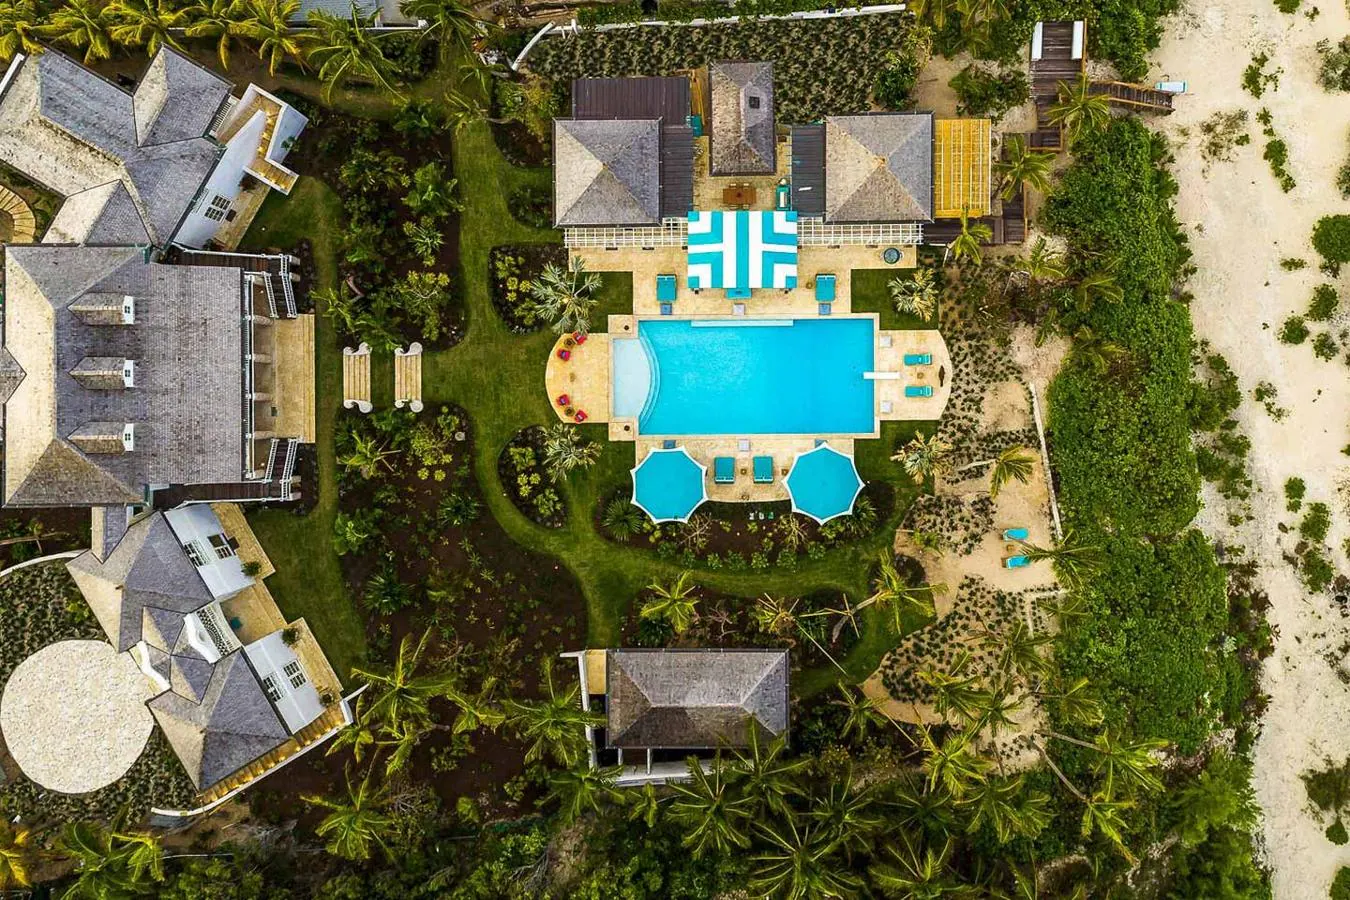 Privacidad y tranquilidad- La lujosa mansión de Kylie Jenner en Bahamas. Elegantes escaleras conducen desde la casa principal a la piscina, rodeadas de tumbonas y un encantador pabellón cubierto. Cuenta además con una casa de invitados con un dormitorio extra y acceso a la playa desde todas las habitaciones de la residencia.